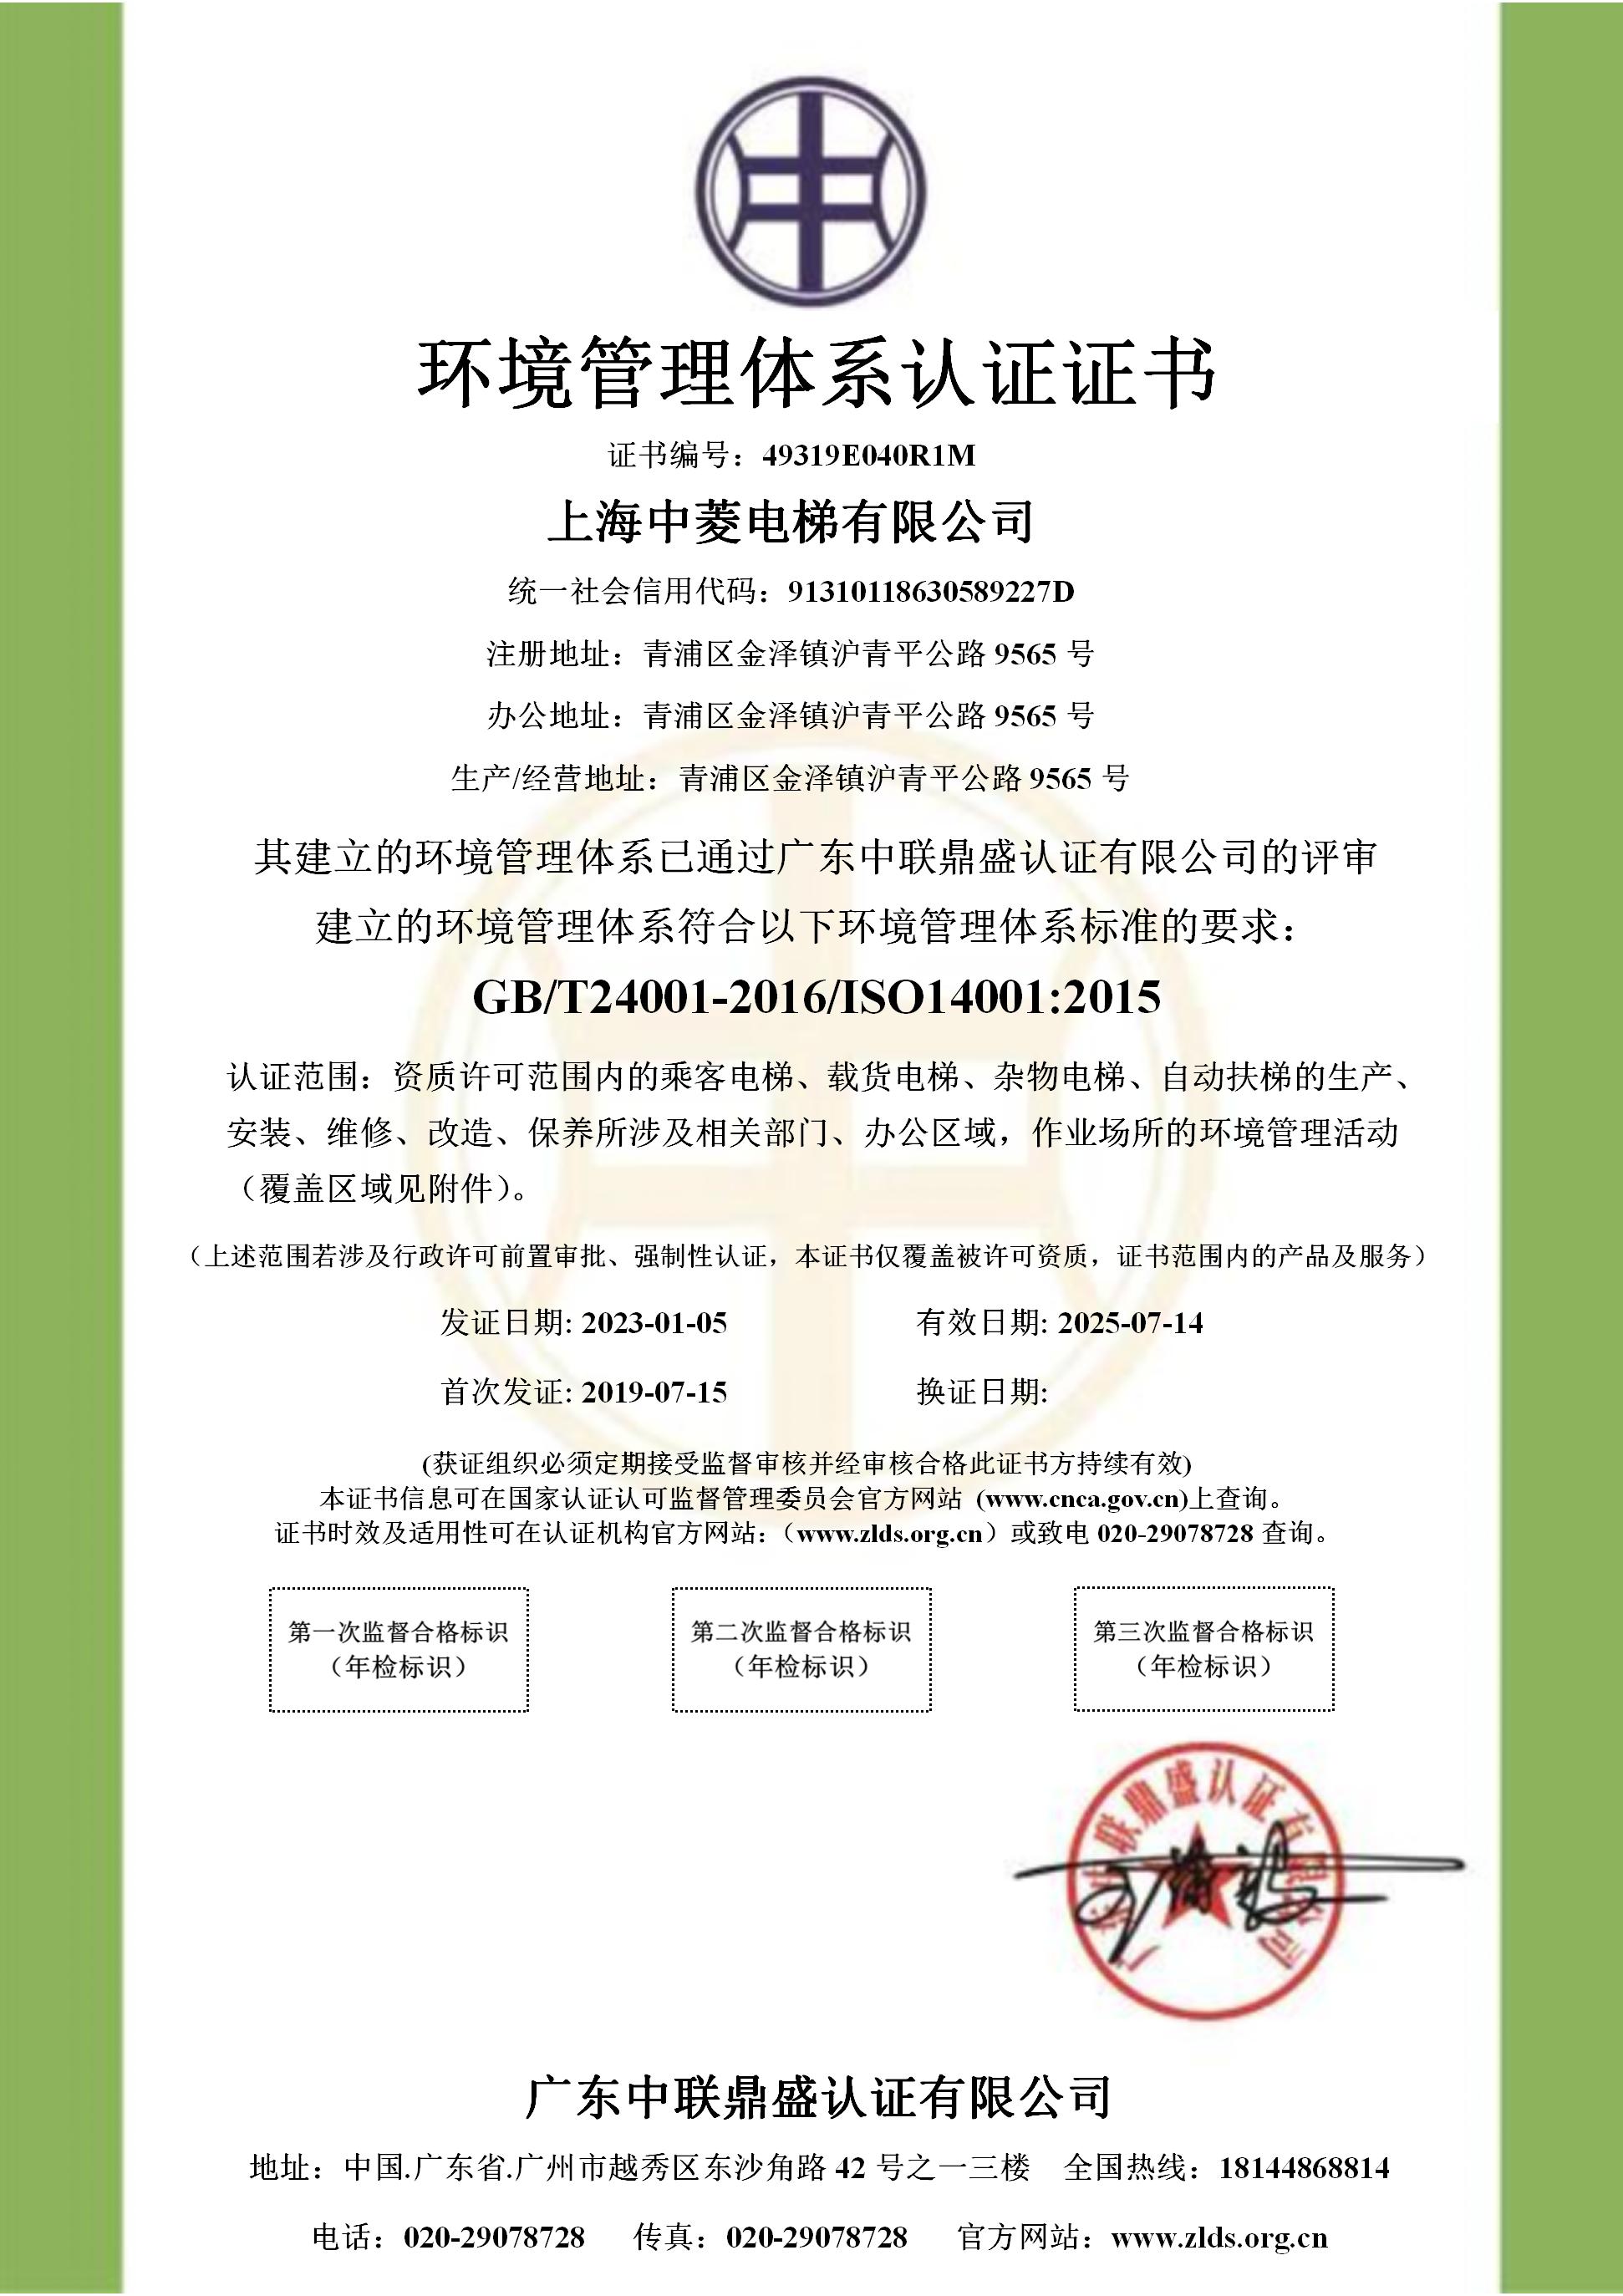 3、环境管理体系认证证书——中菱电梯_01.jpg